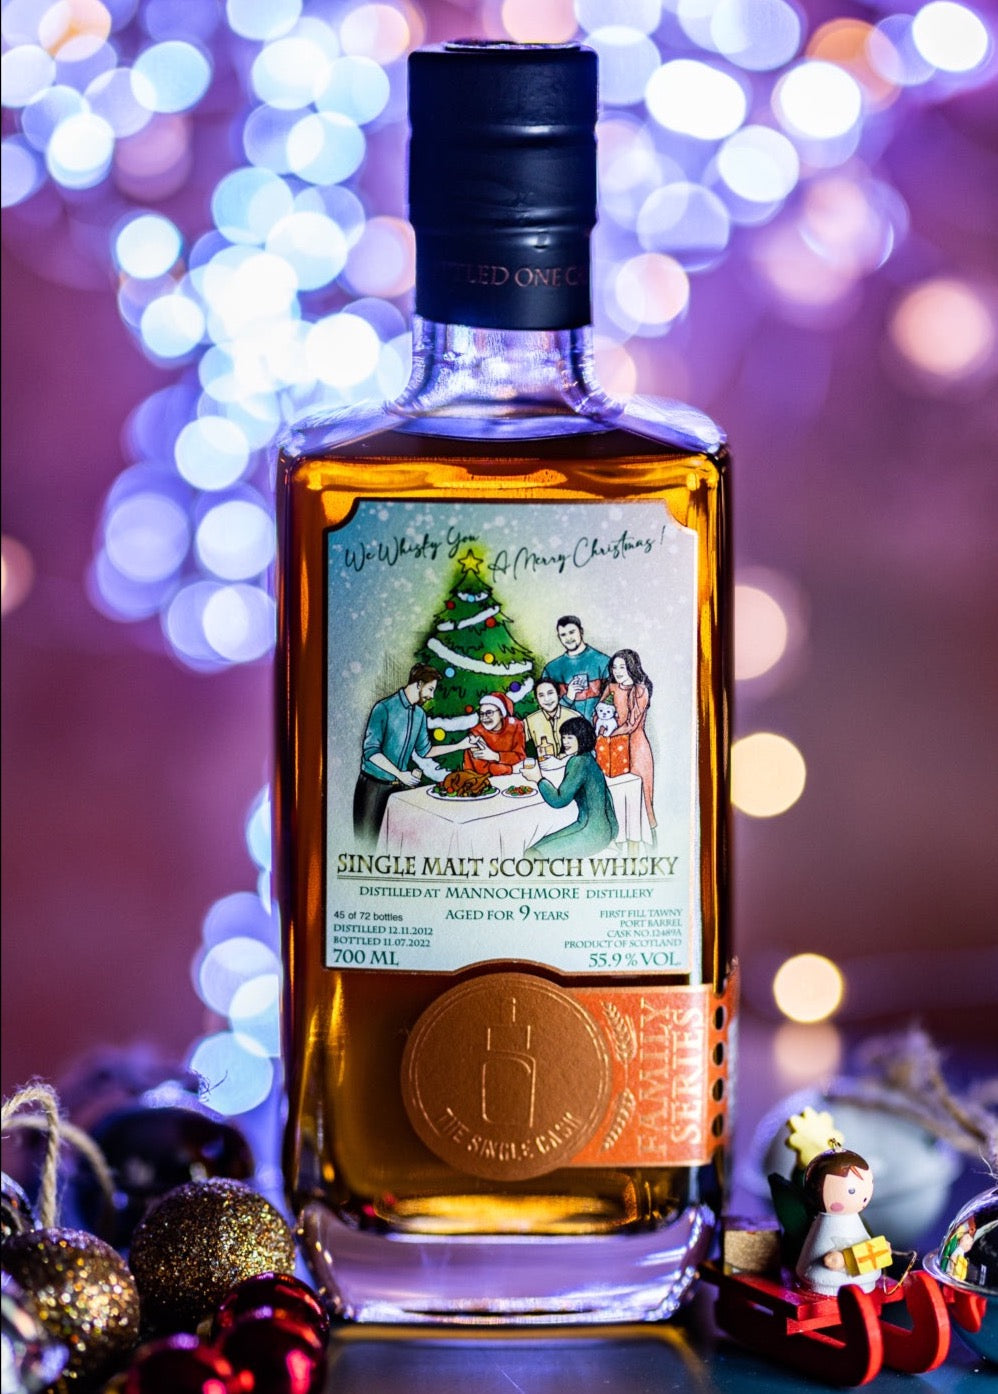 Christmas whisky bottle, single cask scotch whisky